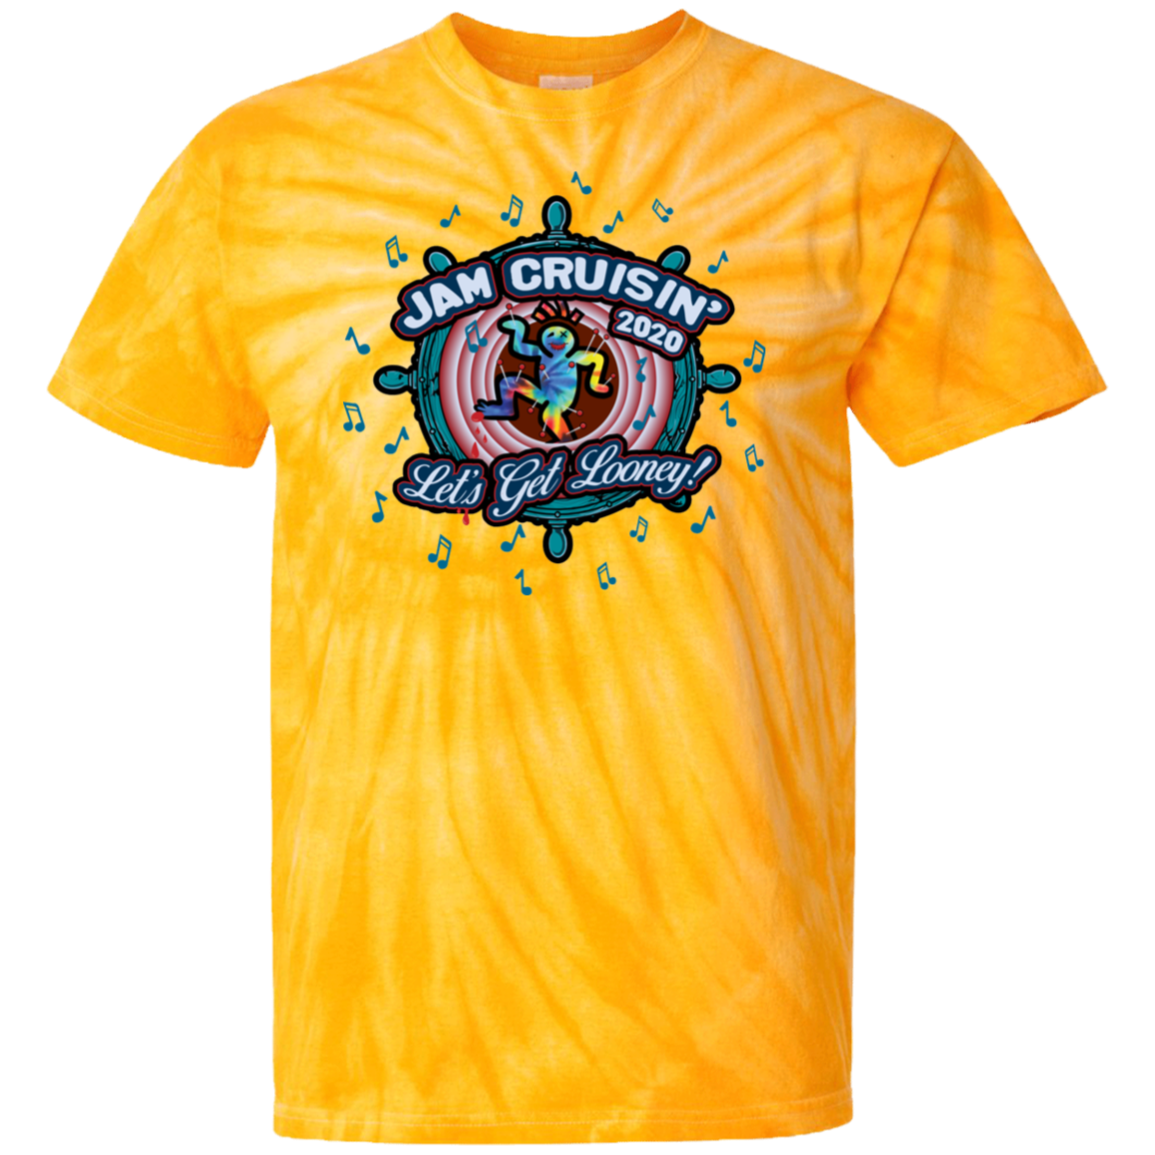 Jam Cruisin' 2020 Let’s Get Looney Tie Dye T-Shirt